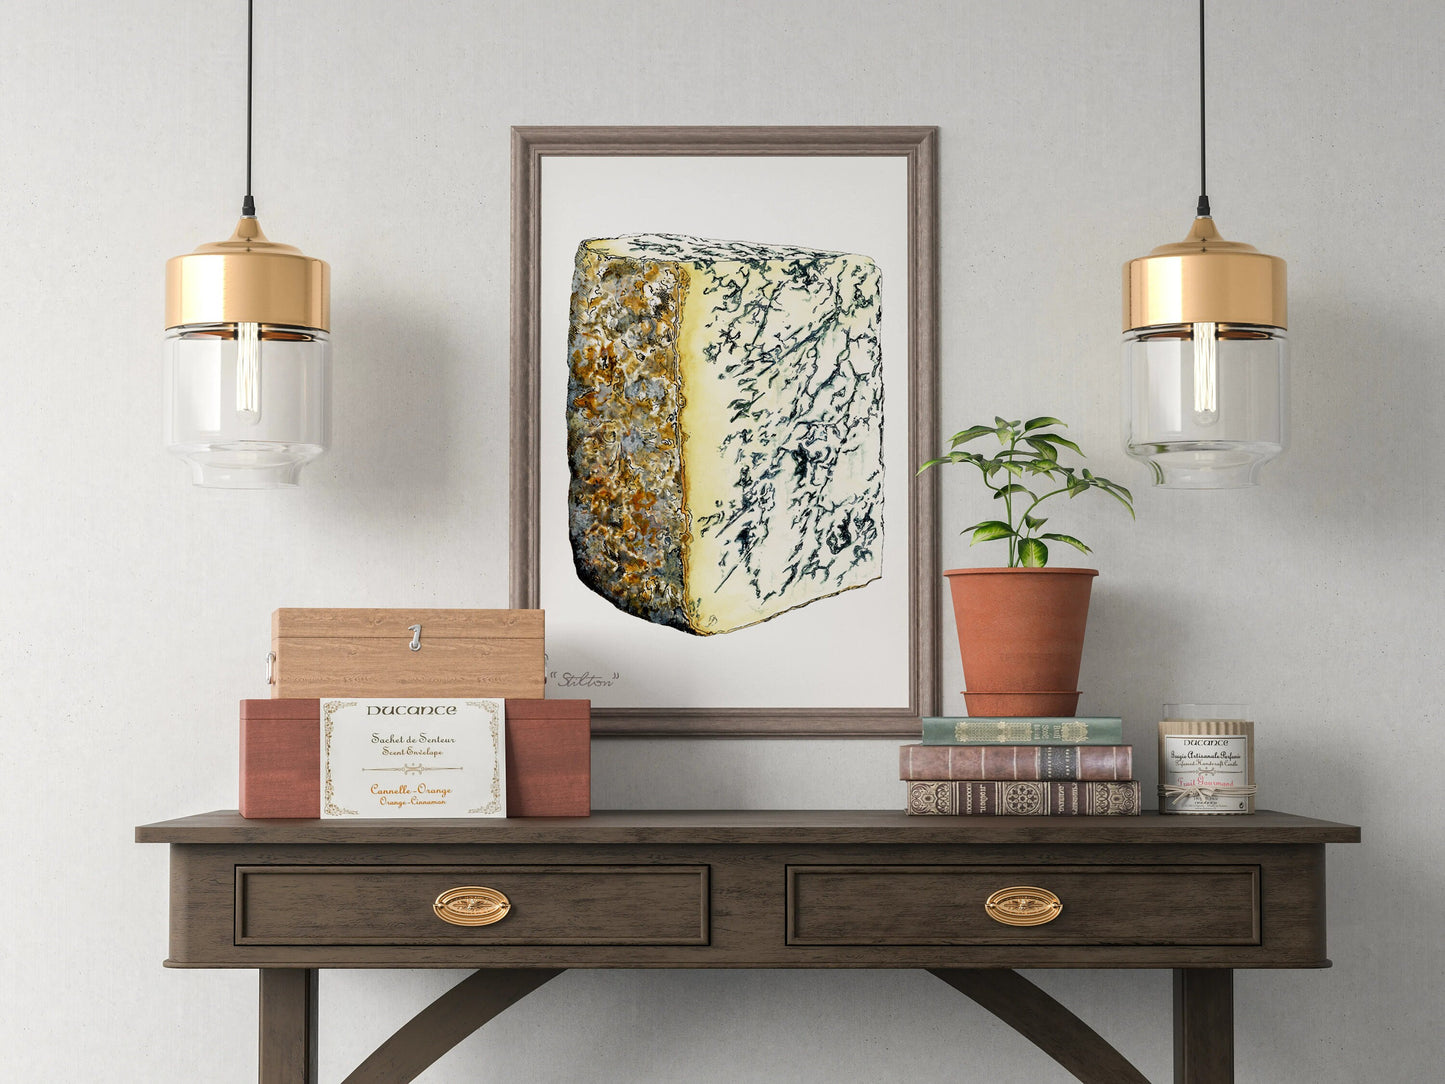 Stilton Cheese Illustration